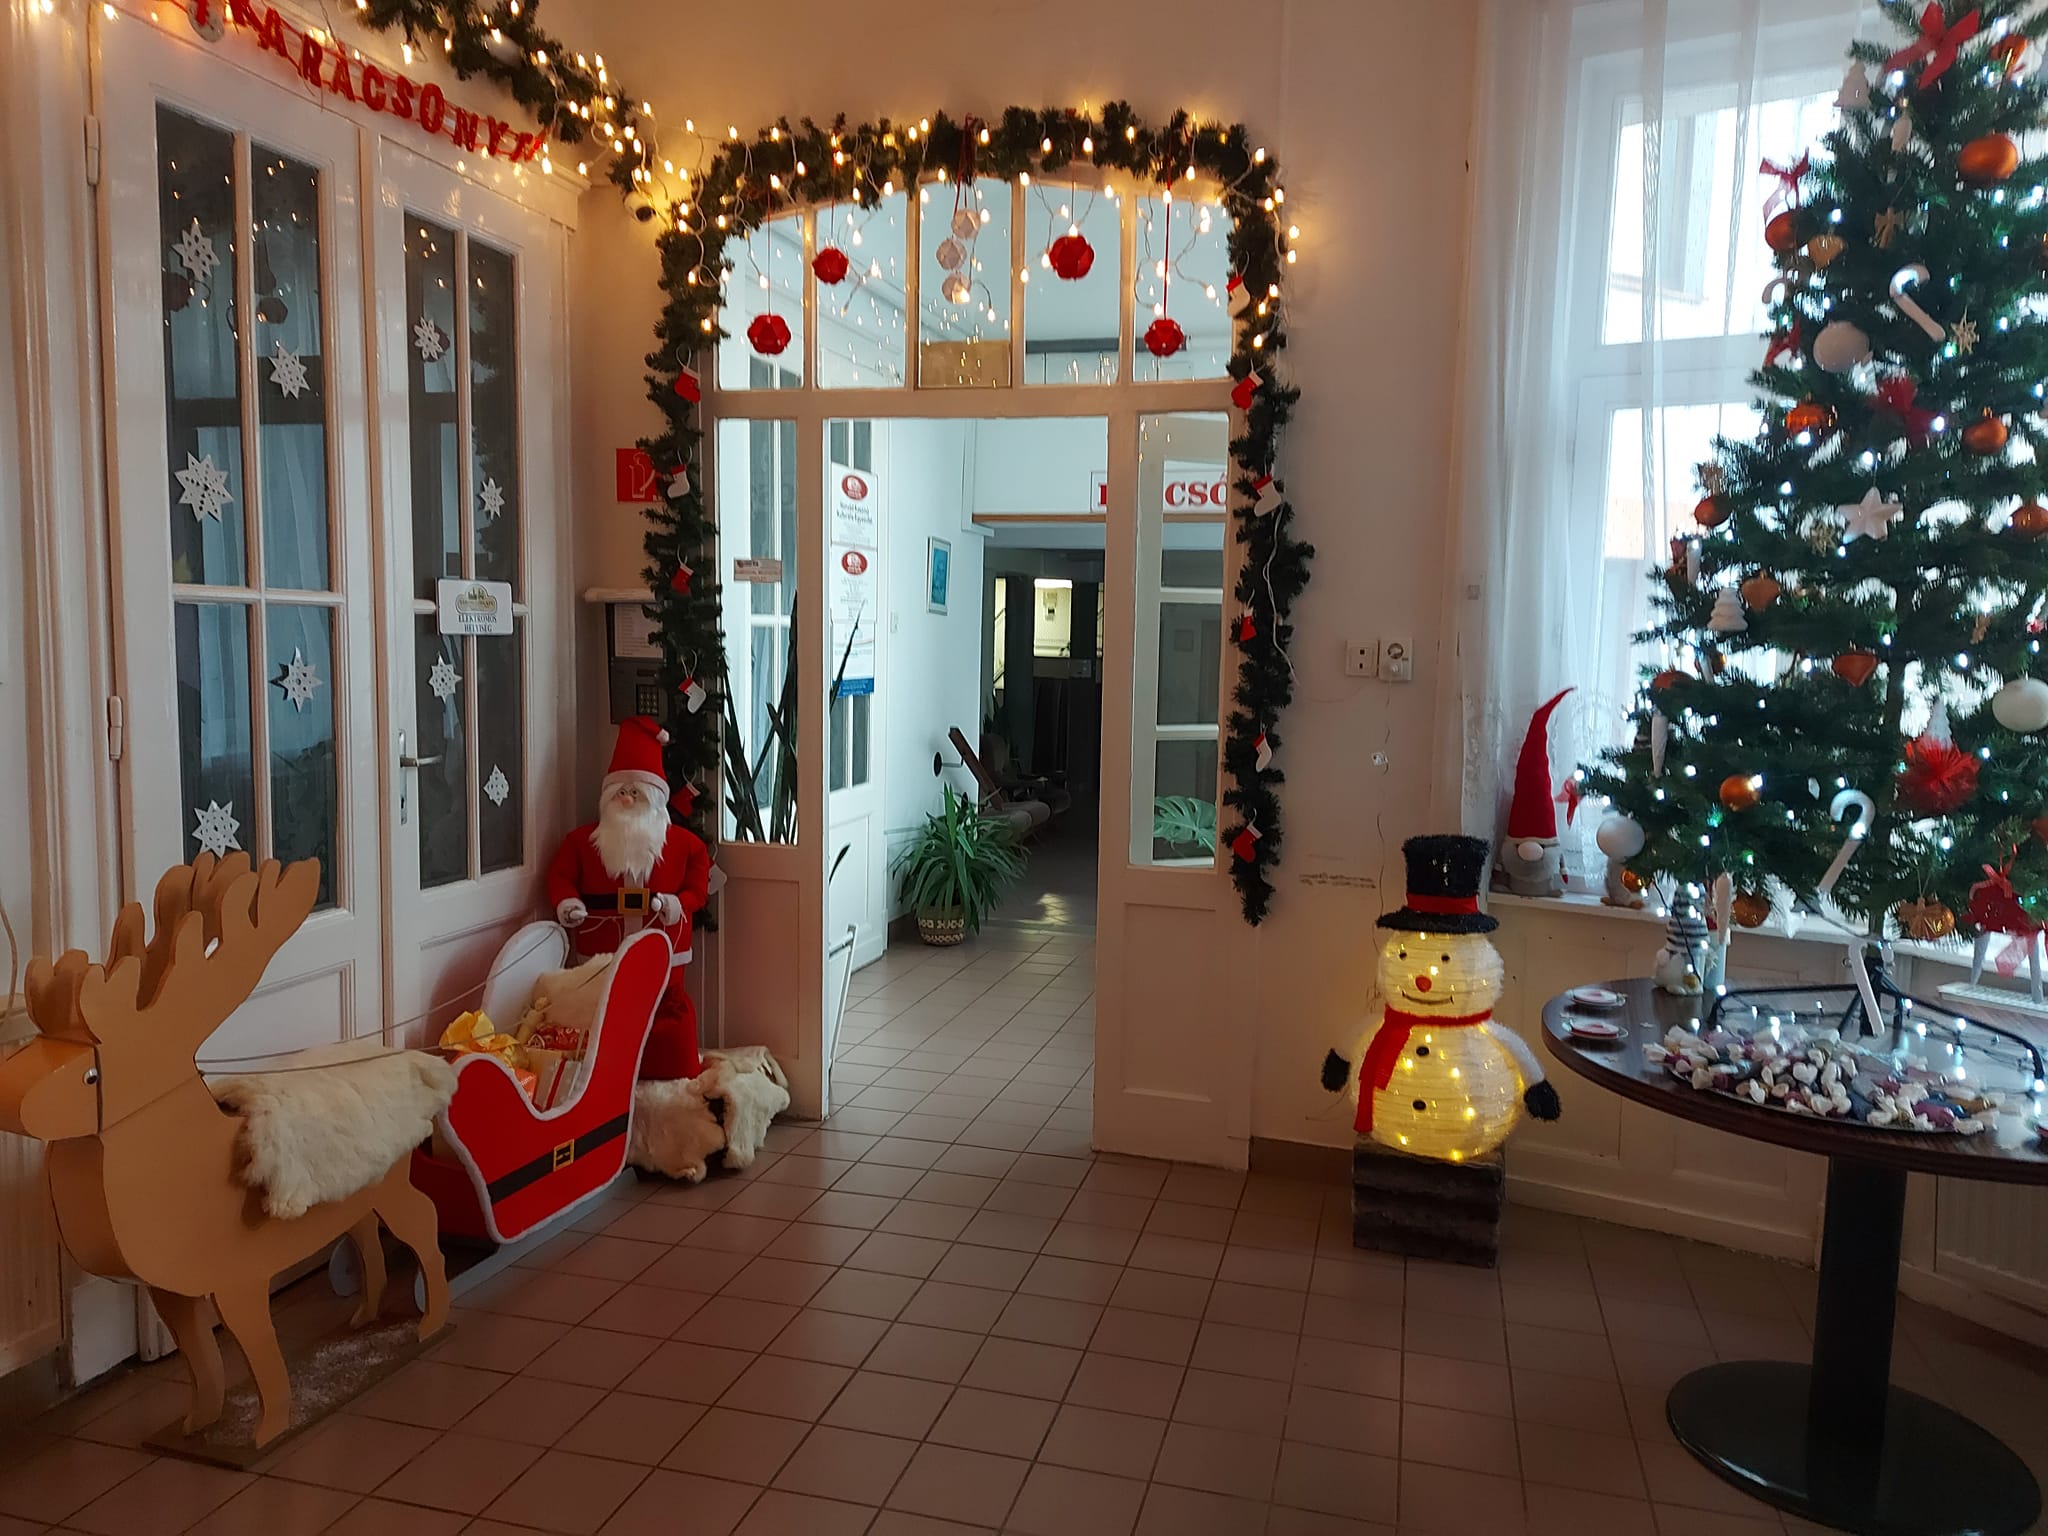 A Városgazda Kft ezzel a miniatűr karácsonyi mesevilággal várja az Ünnepeket